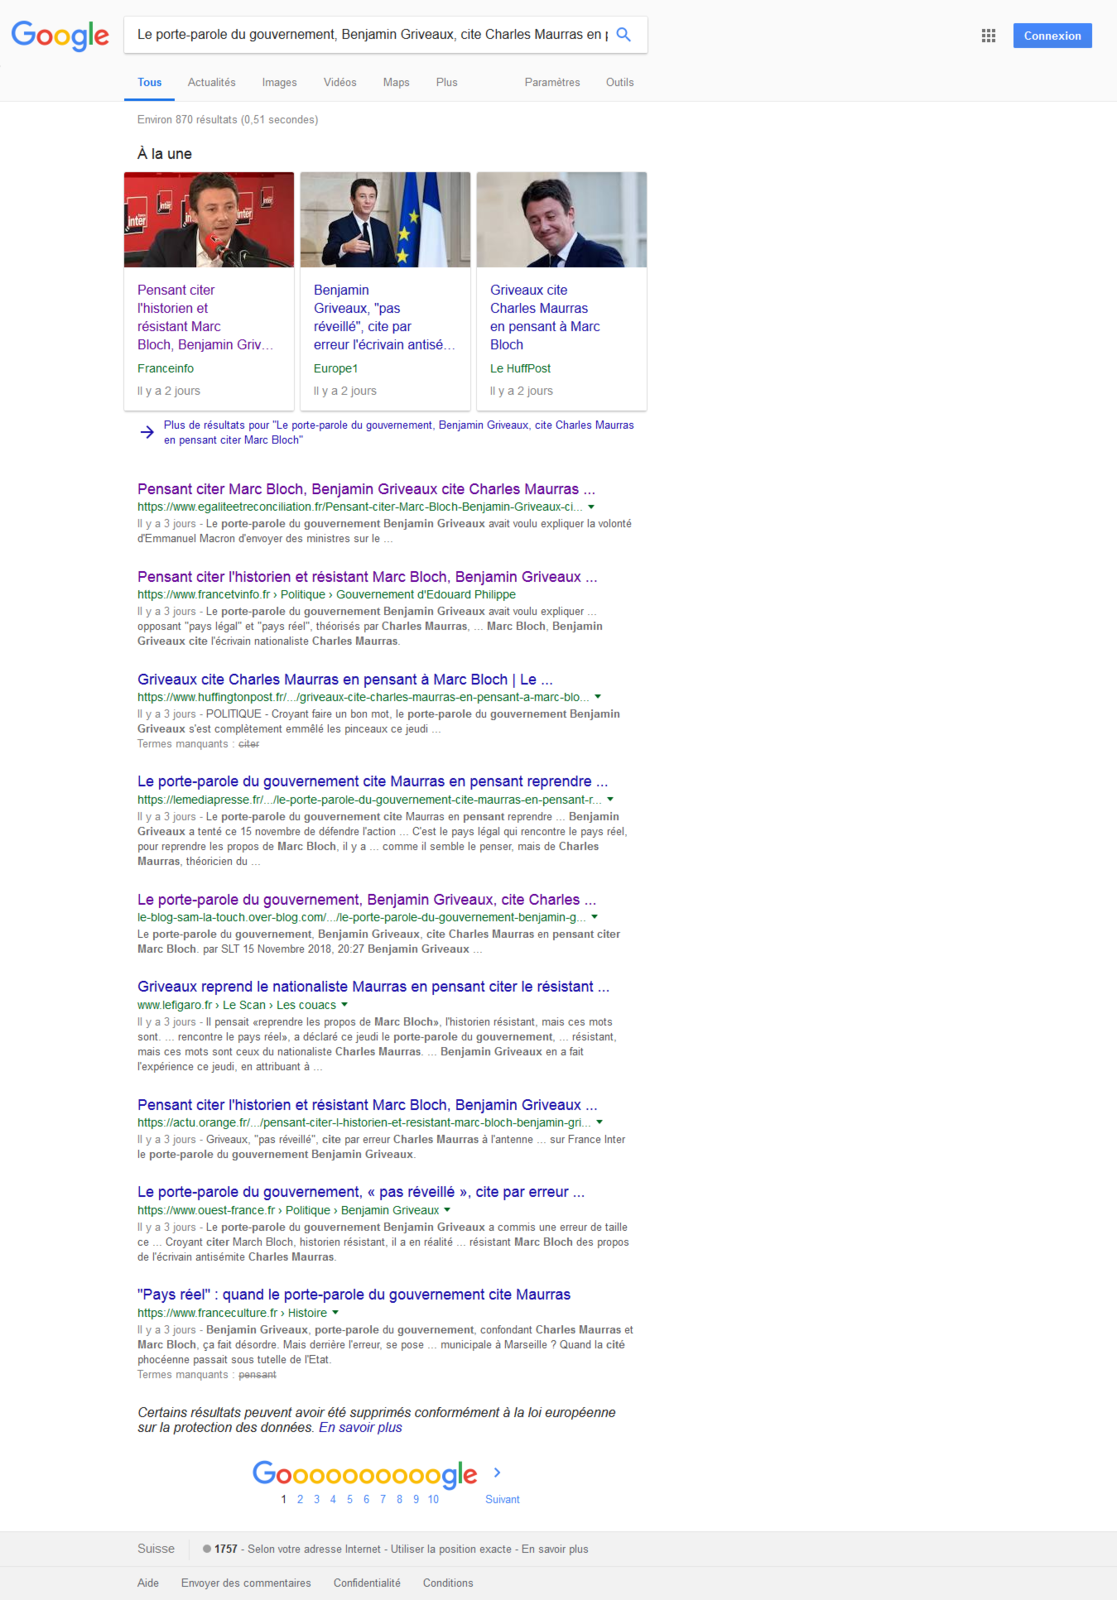 Les articles de SLT toujours déréférencés sur Yahoo, Bing, Duckdukgo, Qwant...